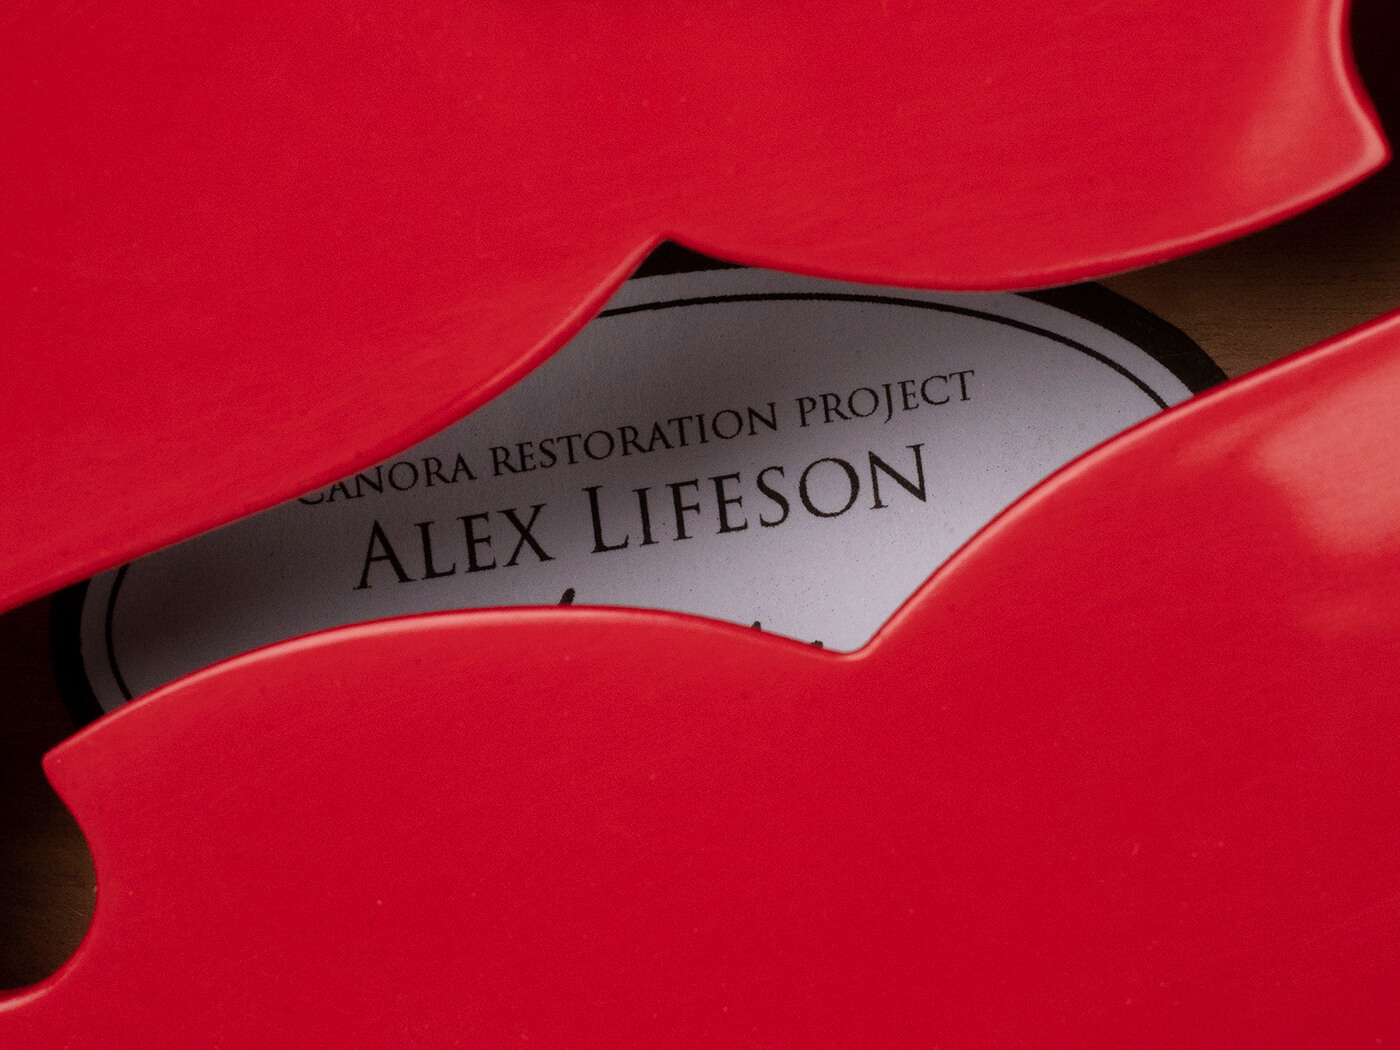 Alex Lifeson's restored Canora